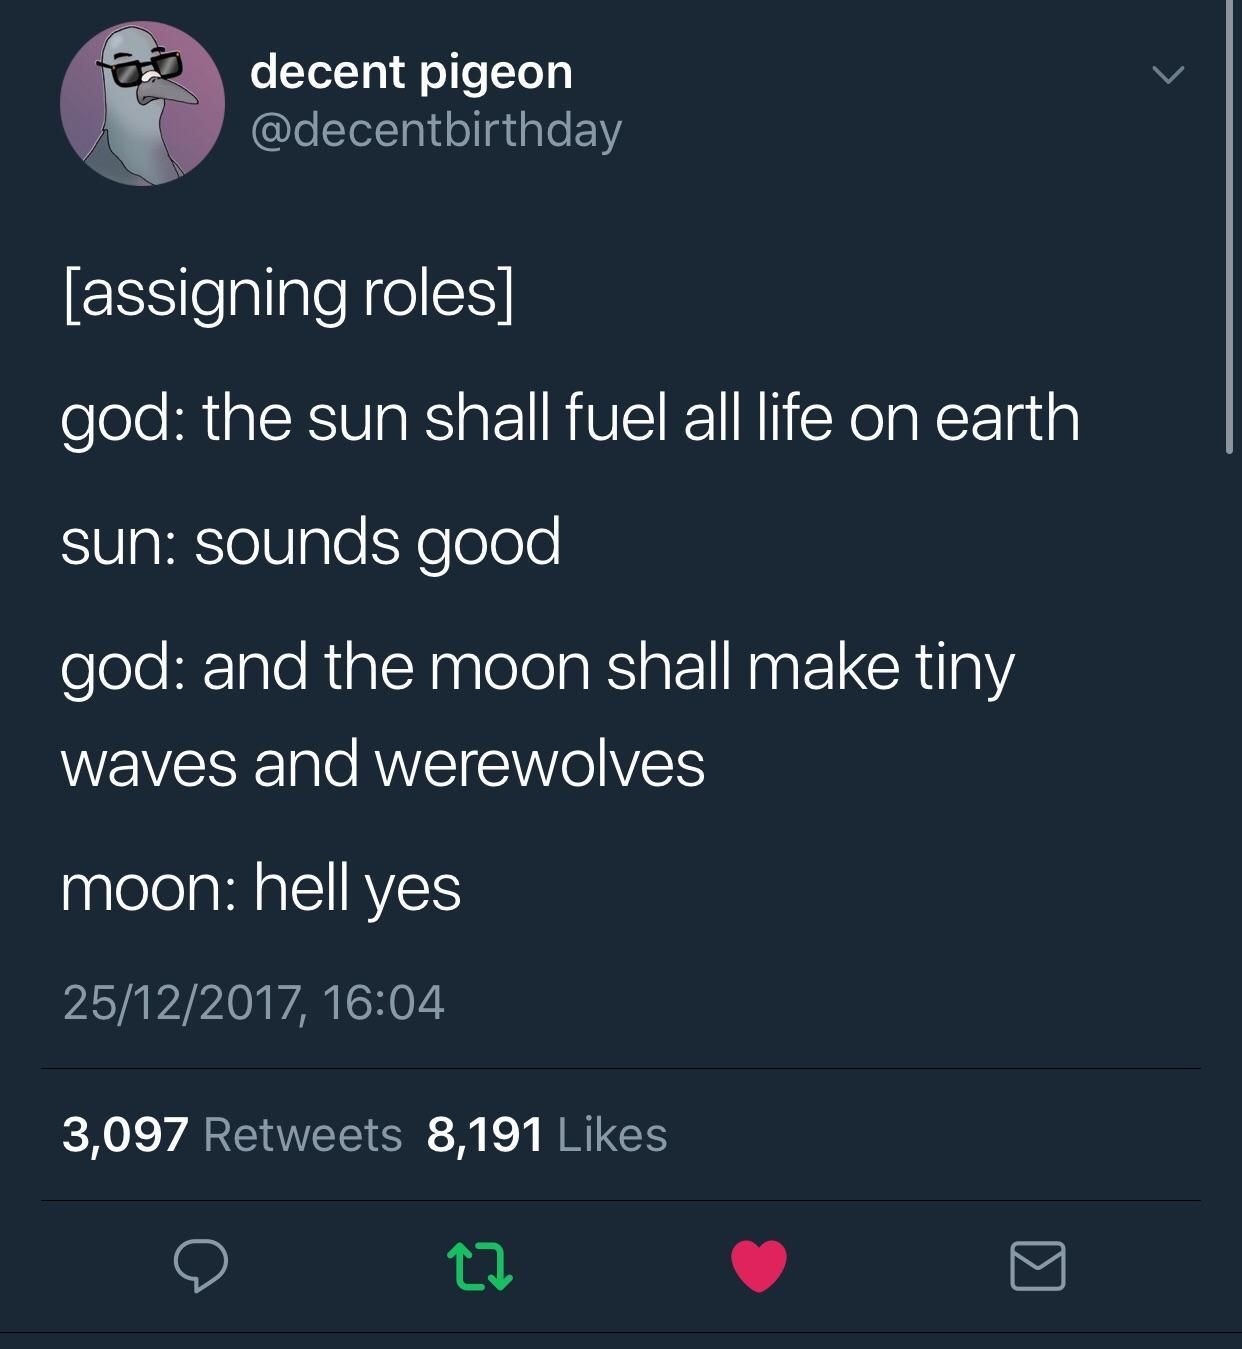 Man the moon has a way cooler job